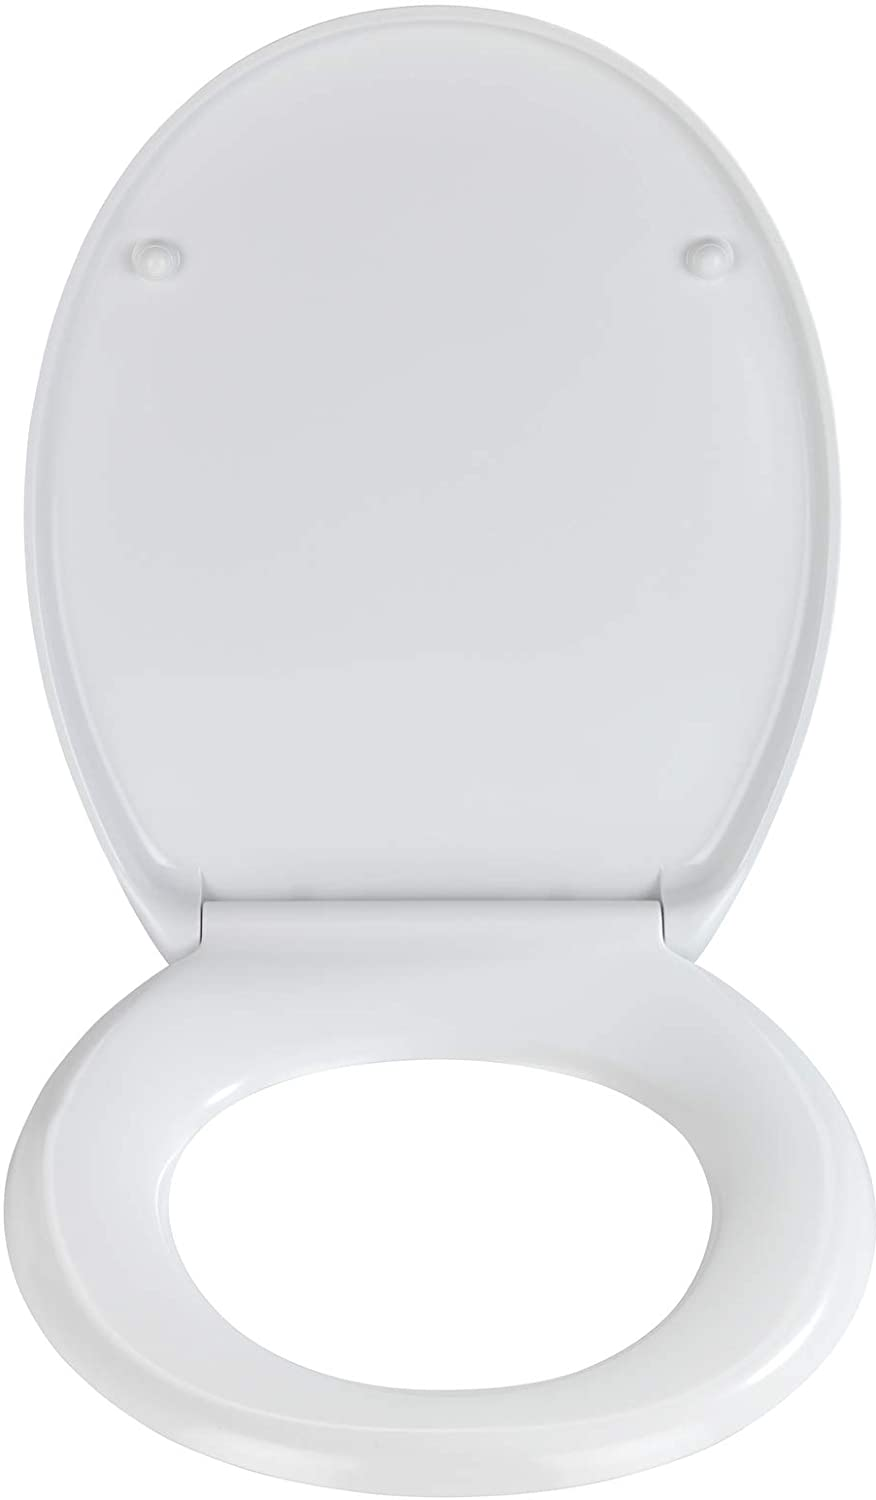 Premium WC-Sitz Colonia - Antibakterieller Toiletten-Sitz mit Absenkautomatik, rostfreie Fix-Clip Hygiene Edelstahlbefestigung, Duroplast, 37.5 x 44.5 cm, Weiß